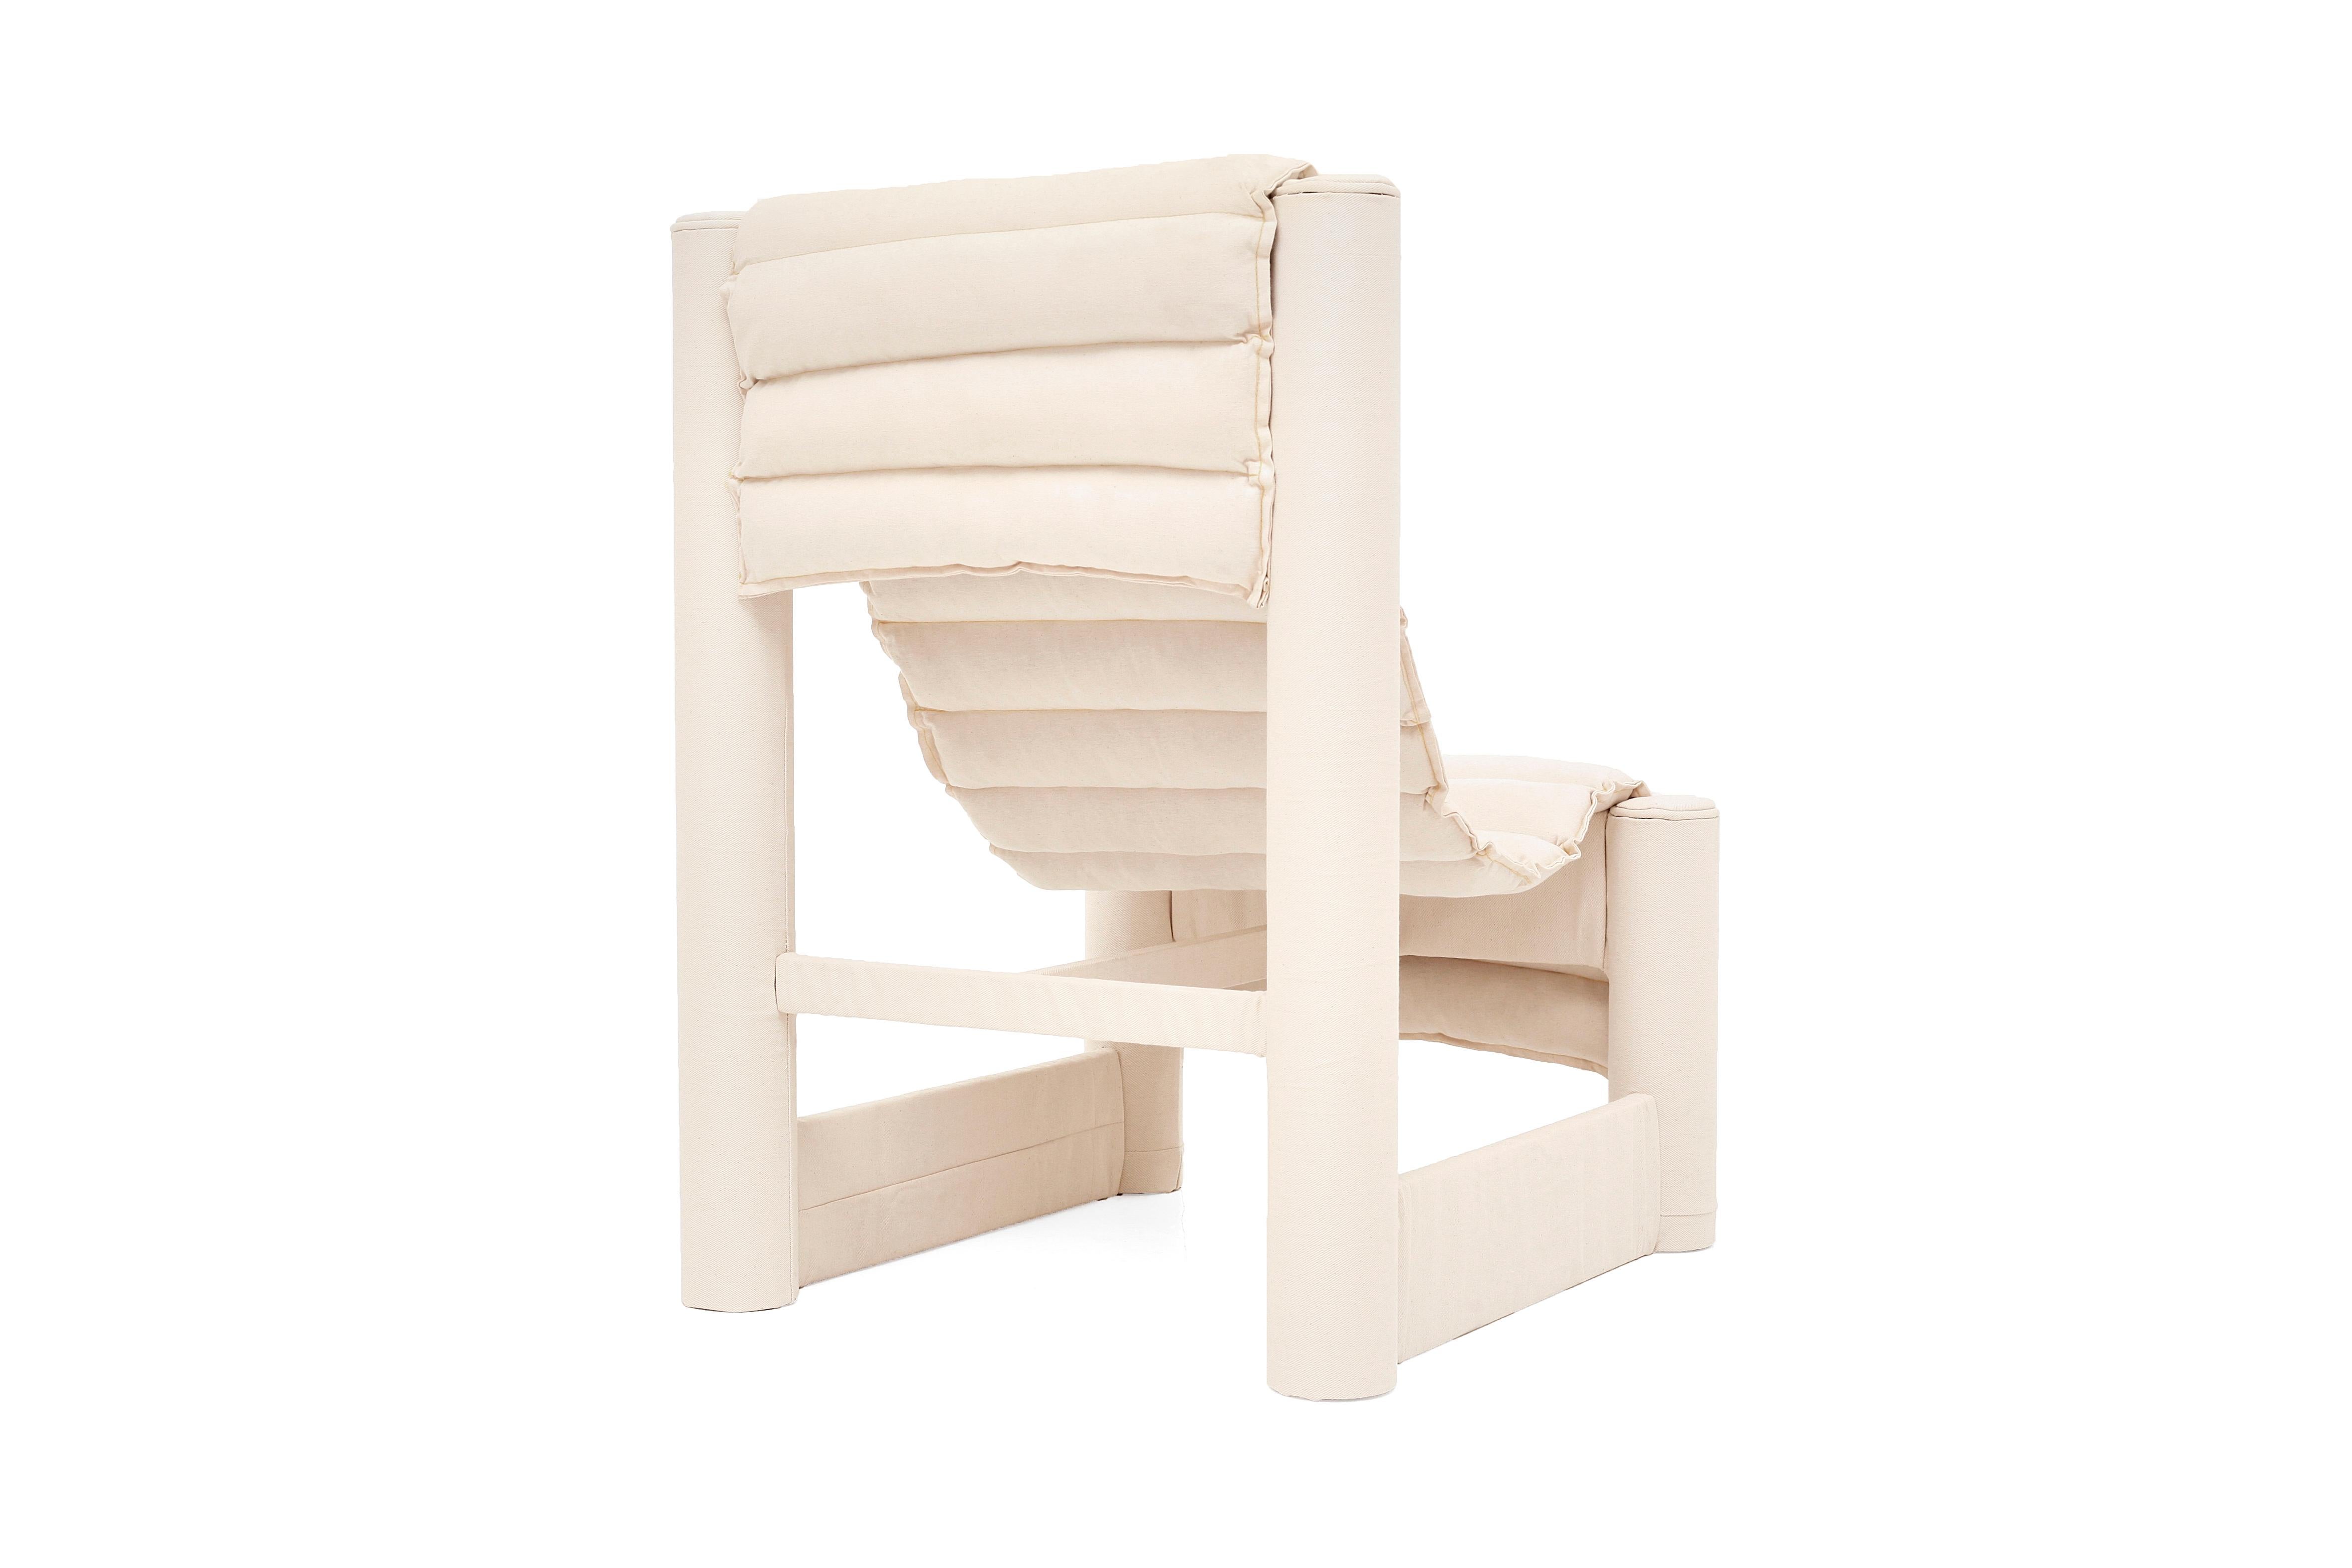 Le fauteuil Roll de LikeMindedObjects est un fauteuil de salon contemporain alliant formes architecturales et confort. Fabriqué à partir de matériaux sains tels que le jean Bull, le papier compressé, le bois et le textile recyclé déchiqueté, ce